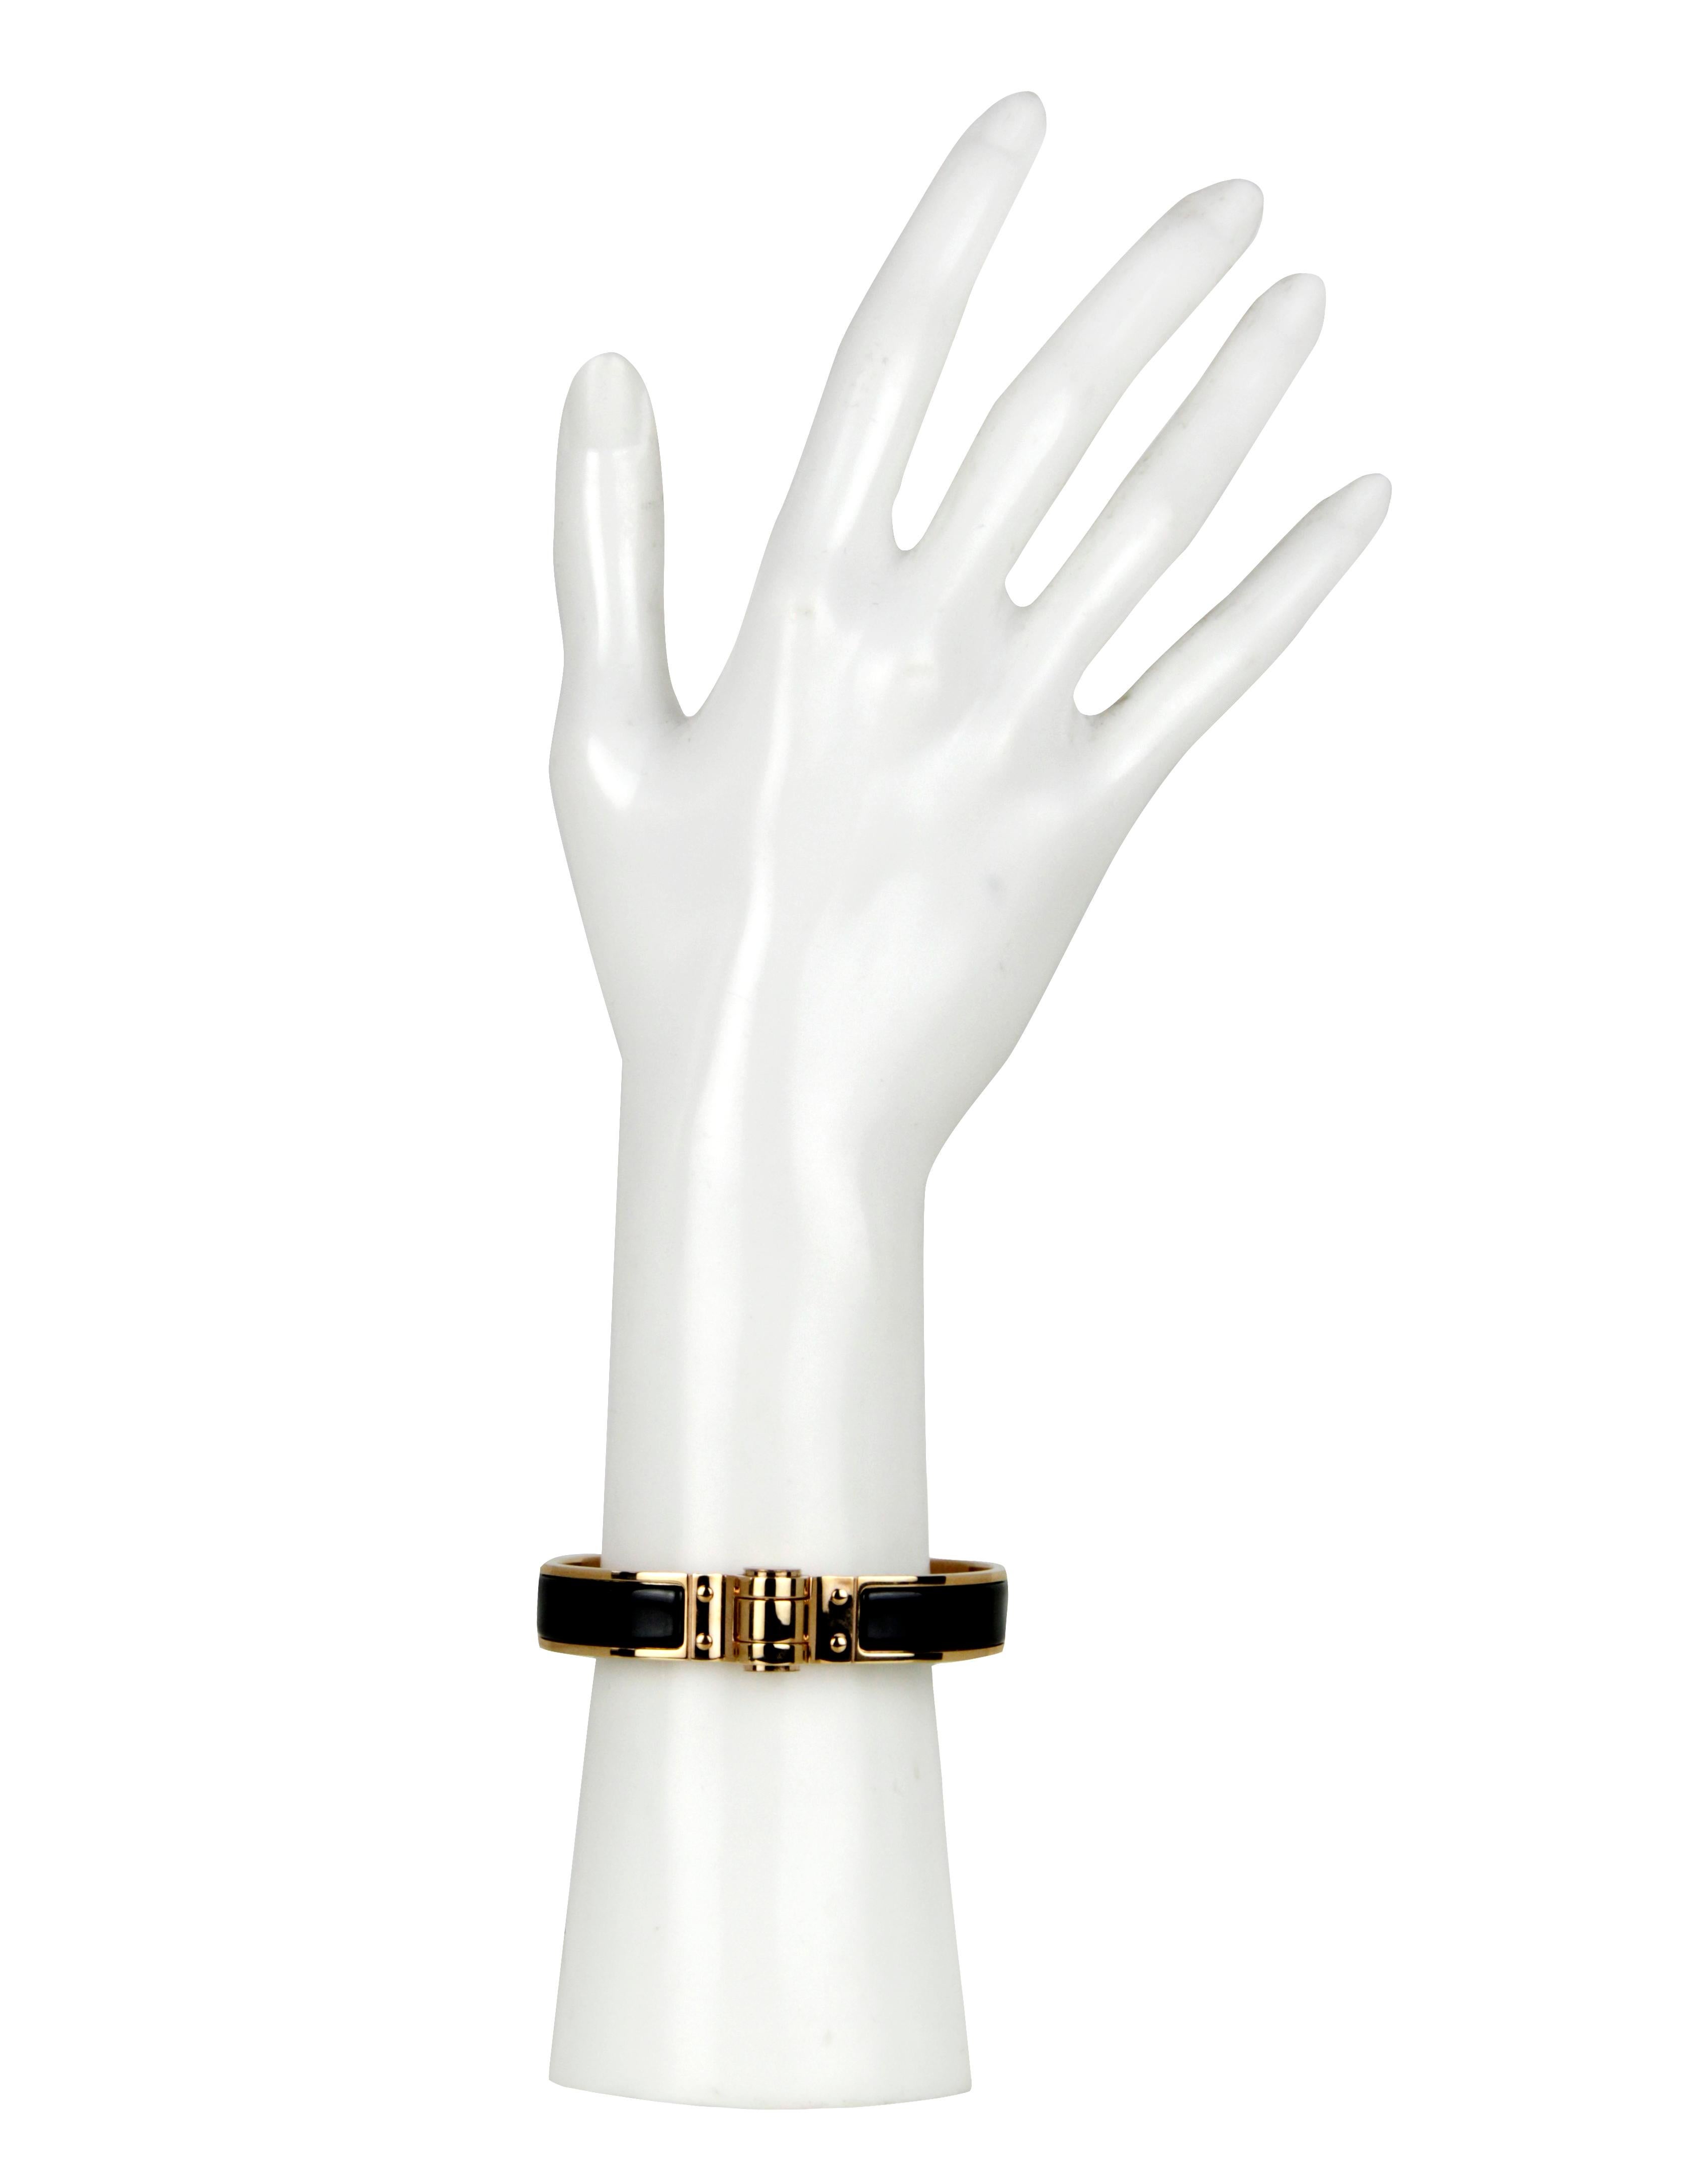 Hermes NEW Black/ Rose Gold Narrow Hinged Bracelet sz M
Made In: France
Color: Black, rose gold 
Materials: Rose gold plated metal, enamel
Hallmarks: 